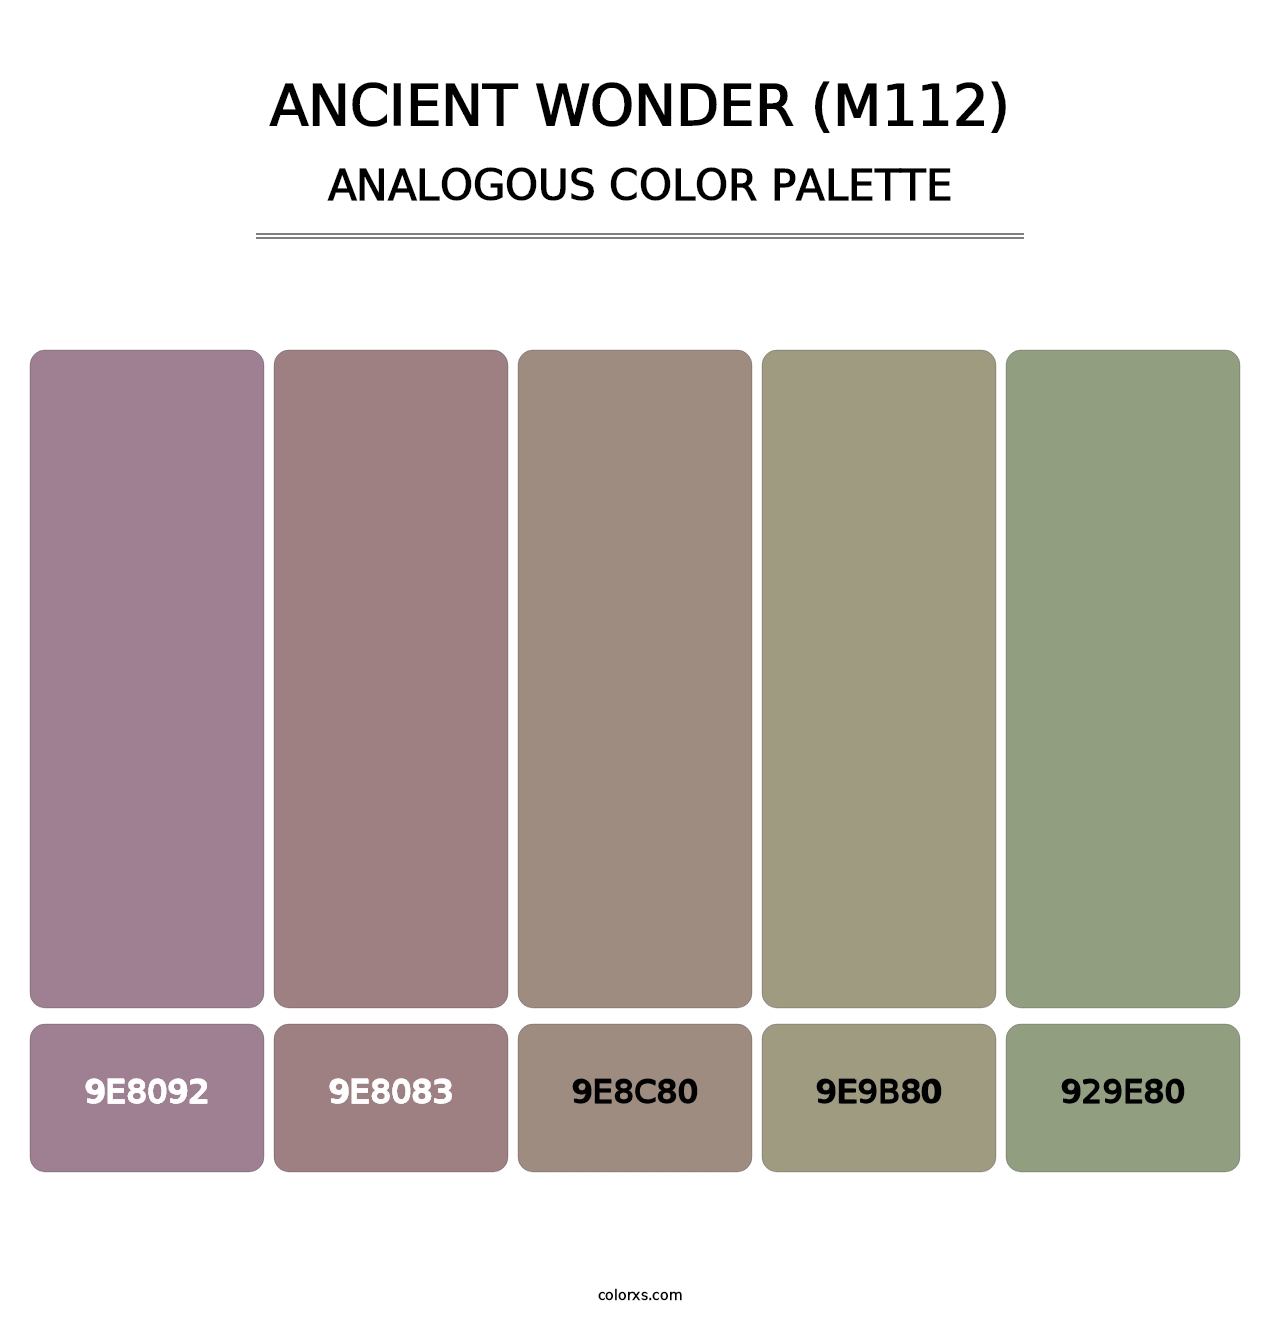 Ancient Wonder (M112) - Analogous Color Palette